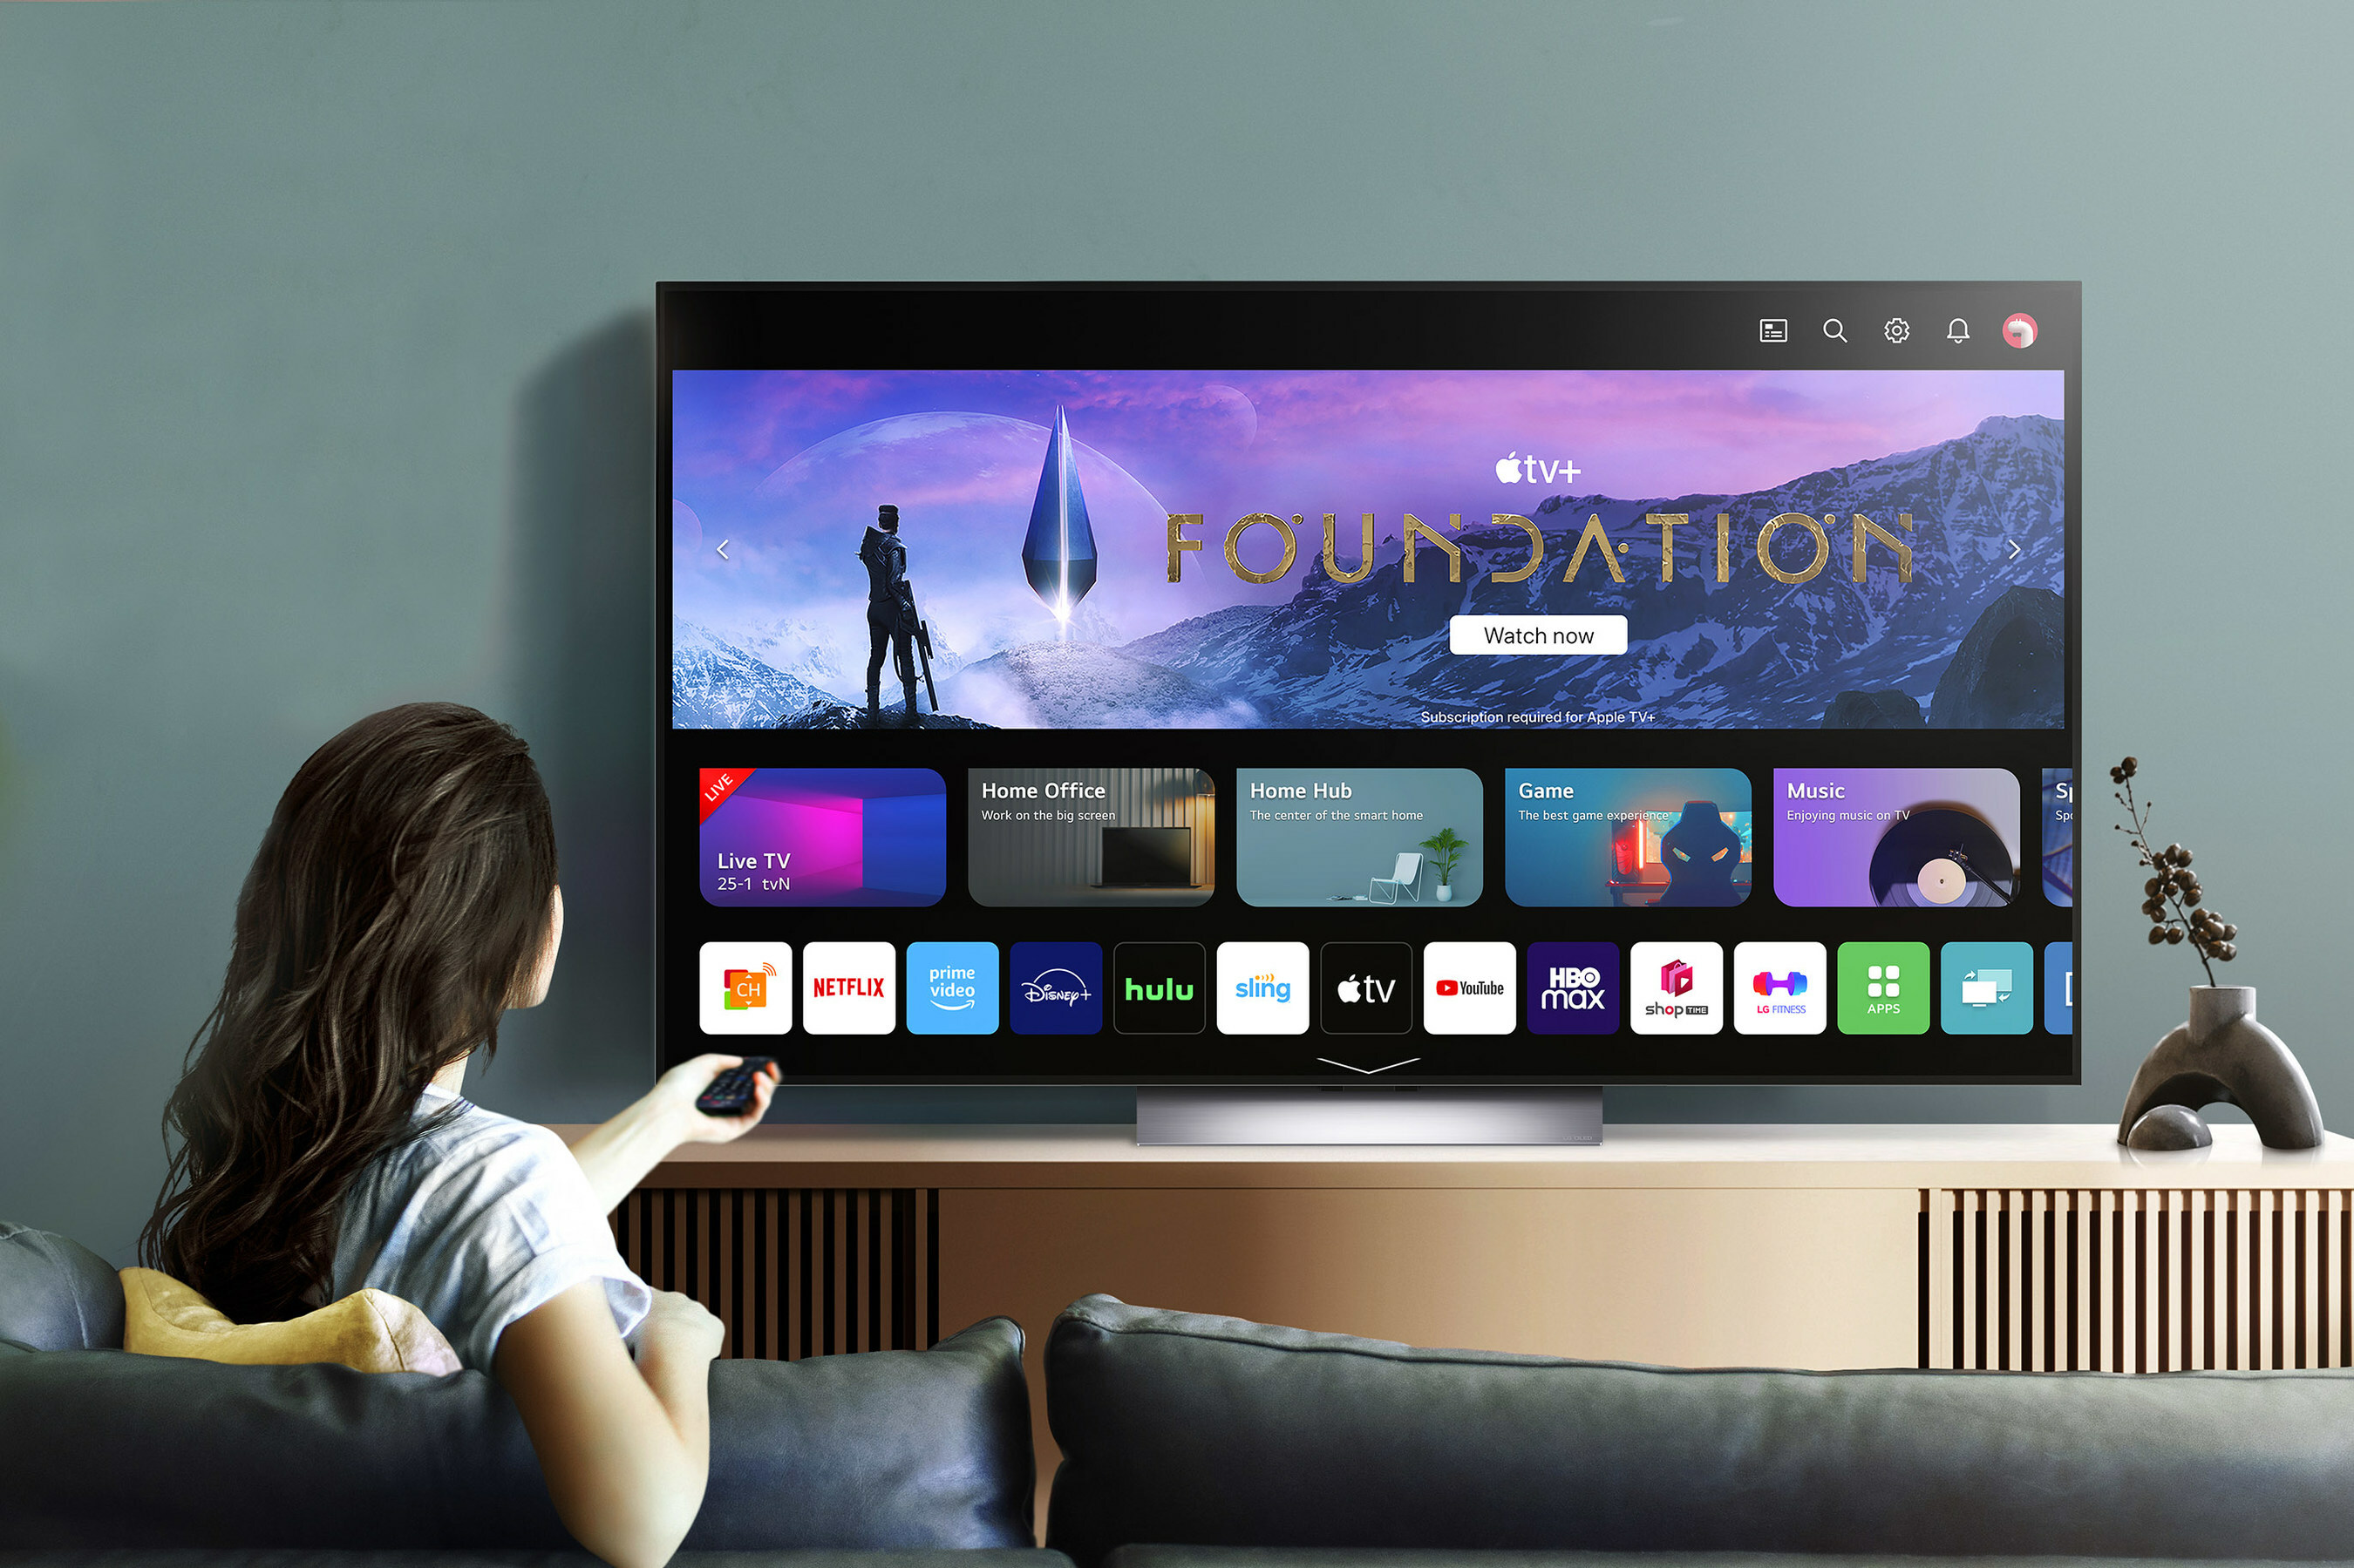 OLED EVO LG TV with webOS image